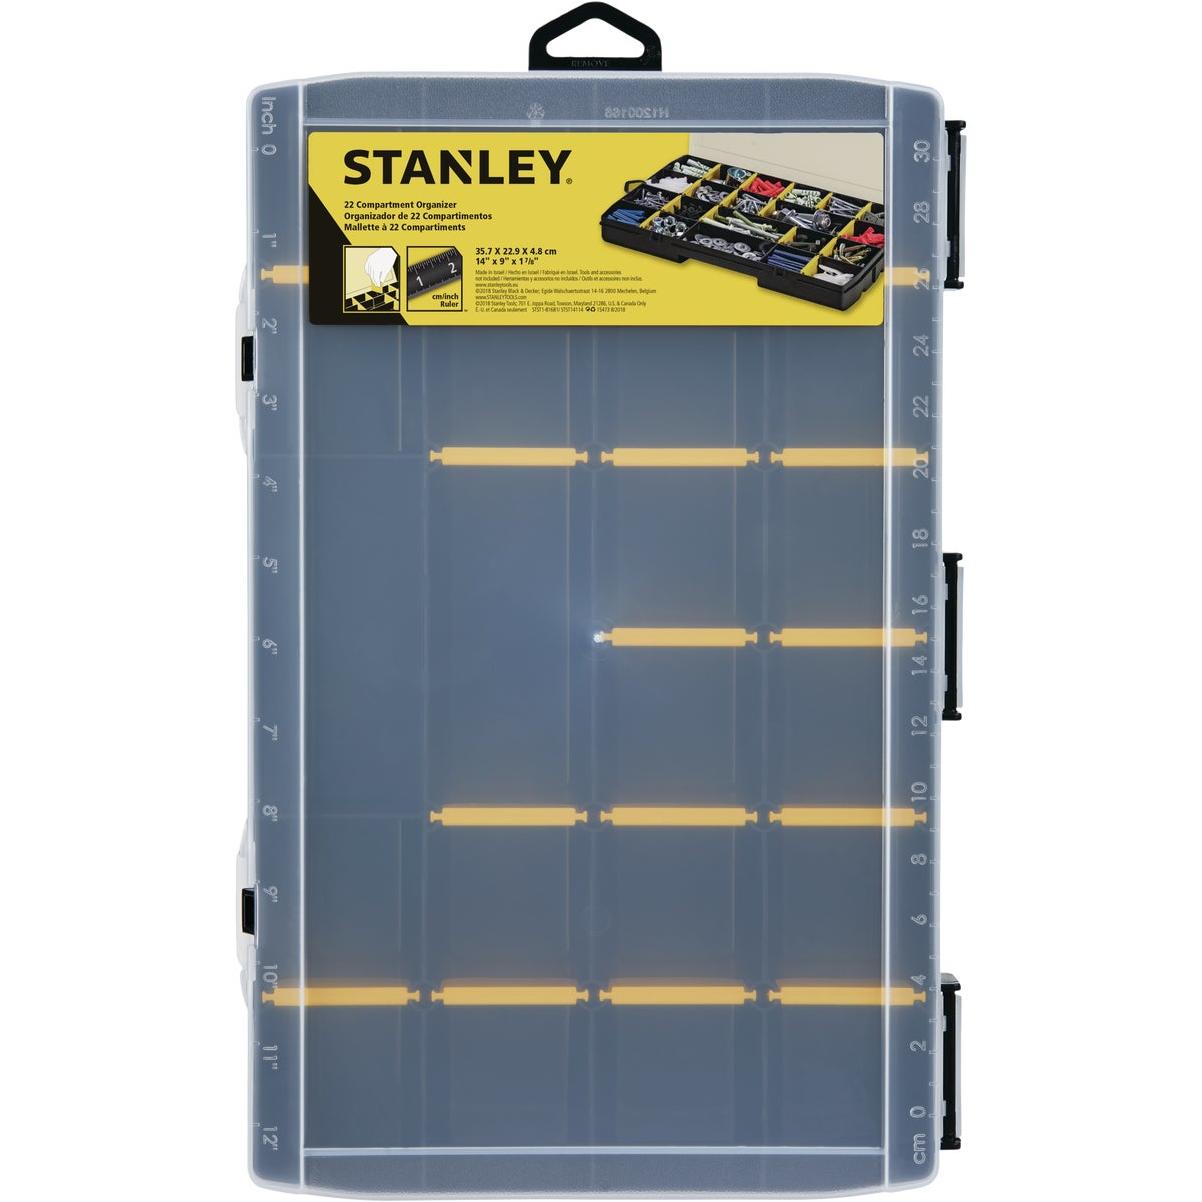 Stanley Storage Tote Tray, STST41001